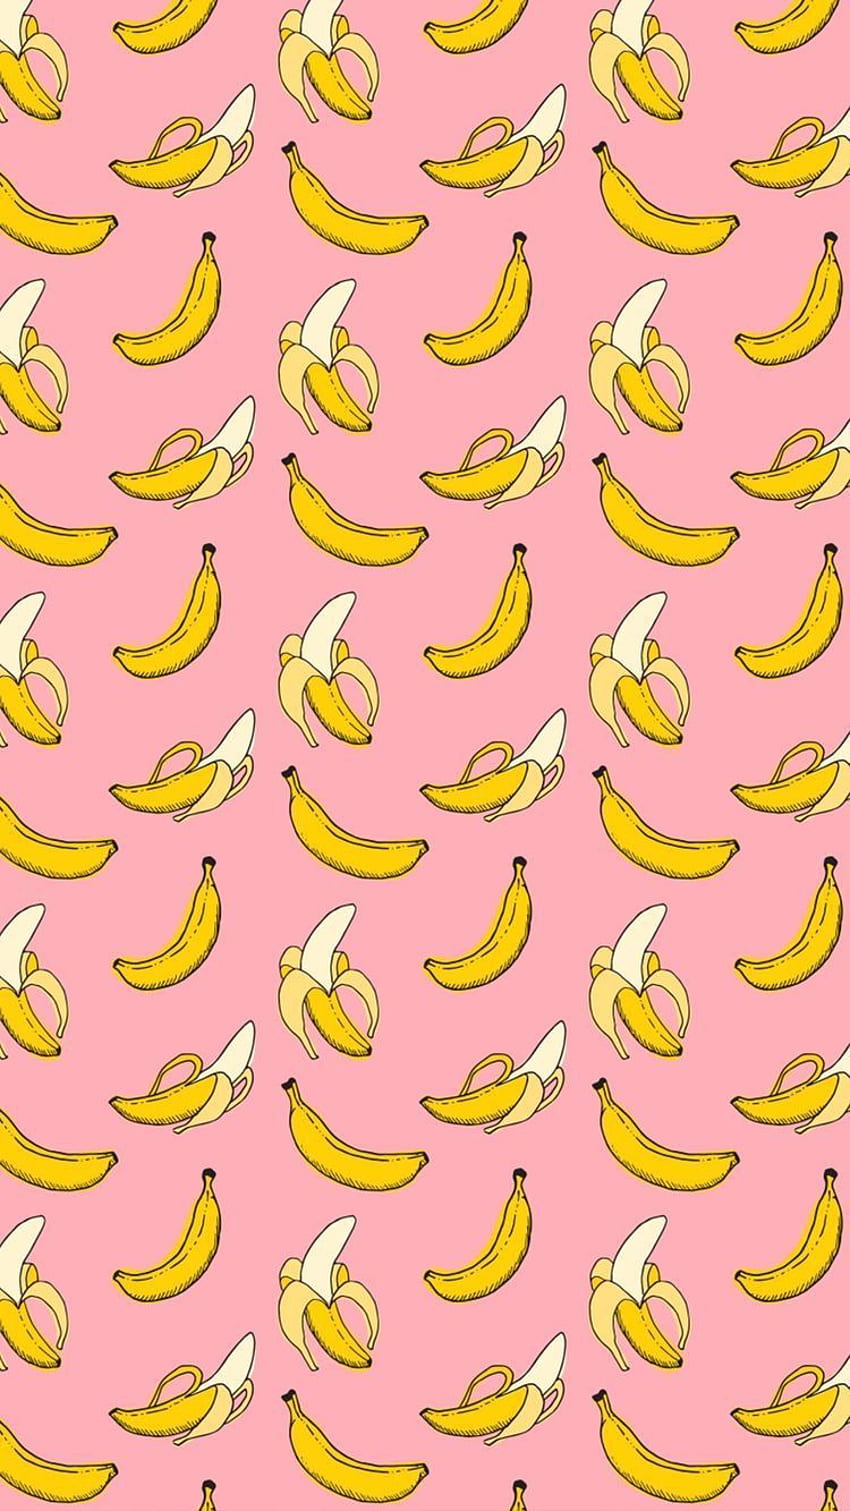 62 Funny Banana Wallpaper  WallpaperSafari